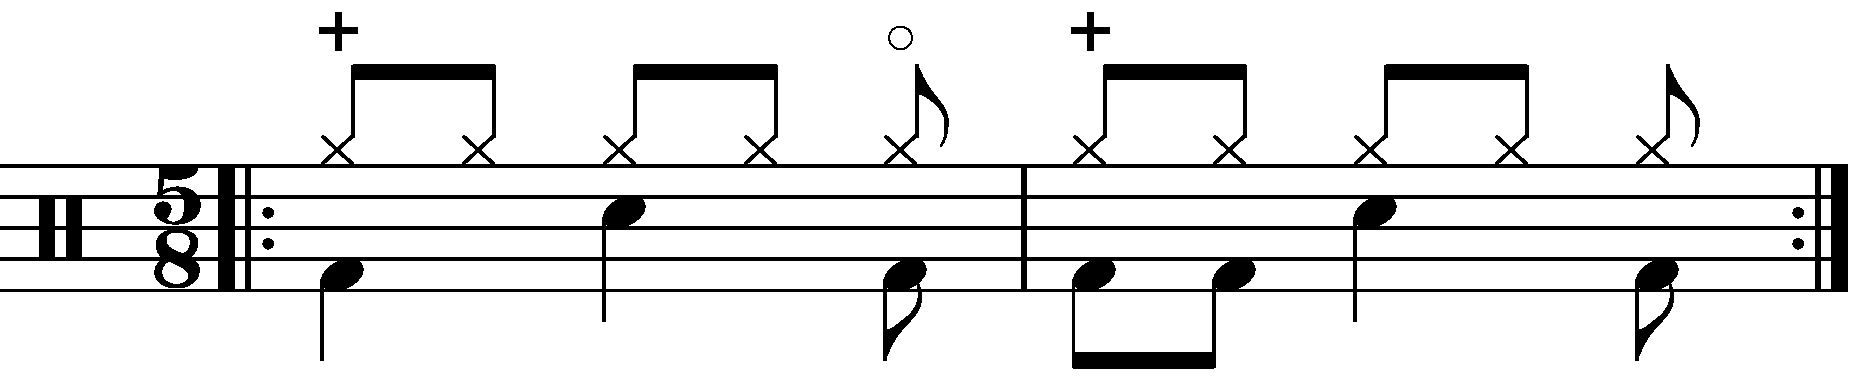 A simple 2 bar 5/8 groove